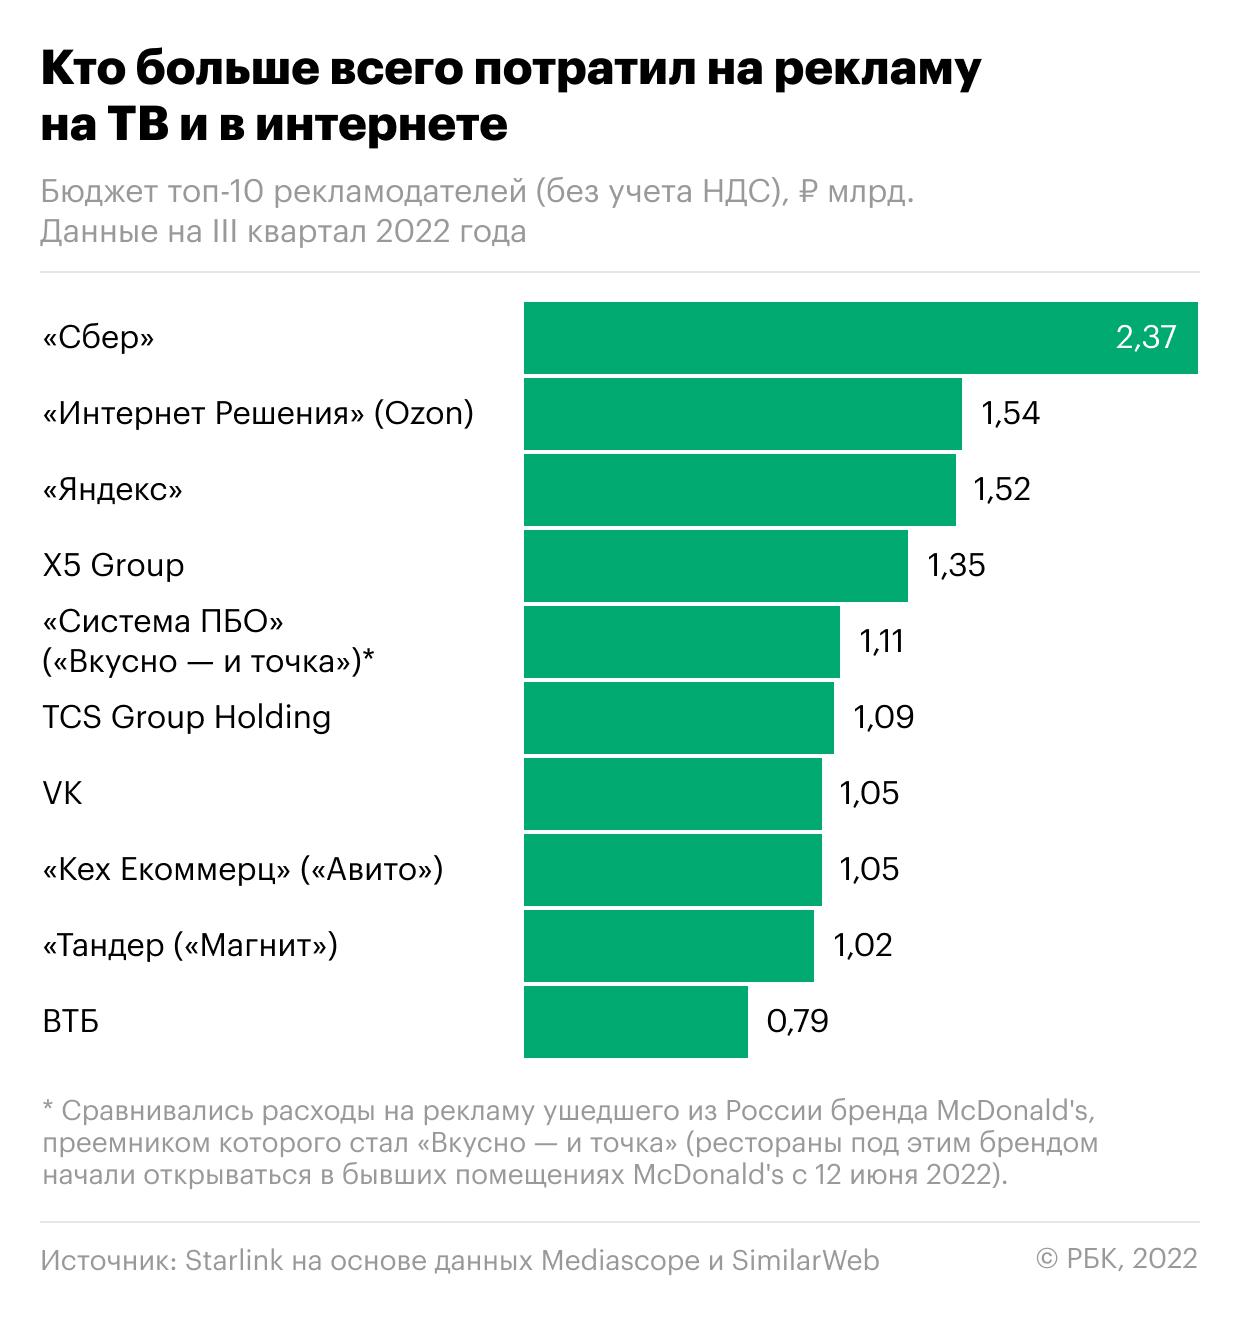 Samsung и Alibaba выпали из топа крупнейших рекламодателей России